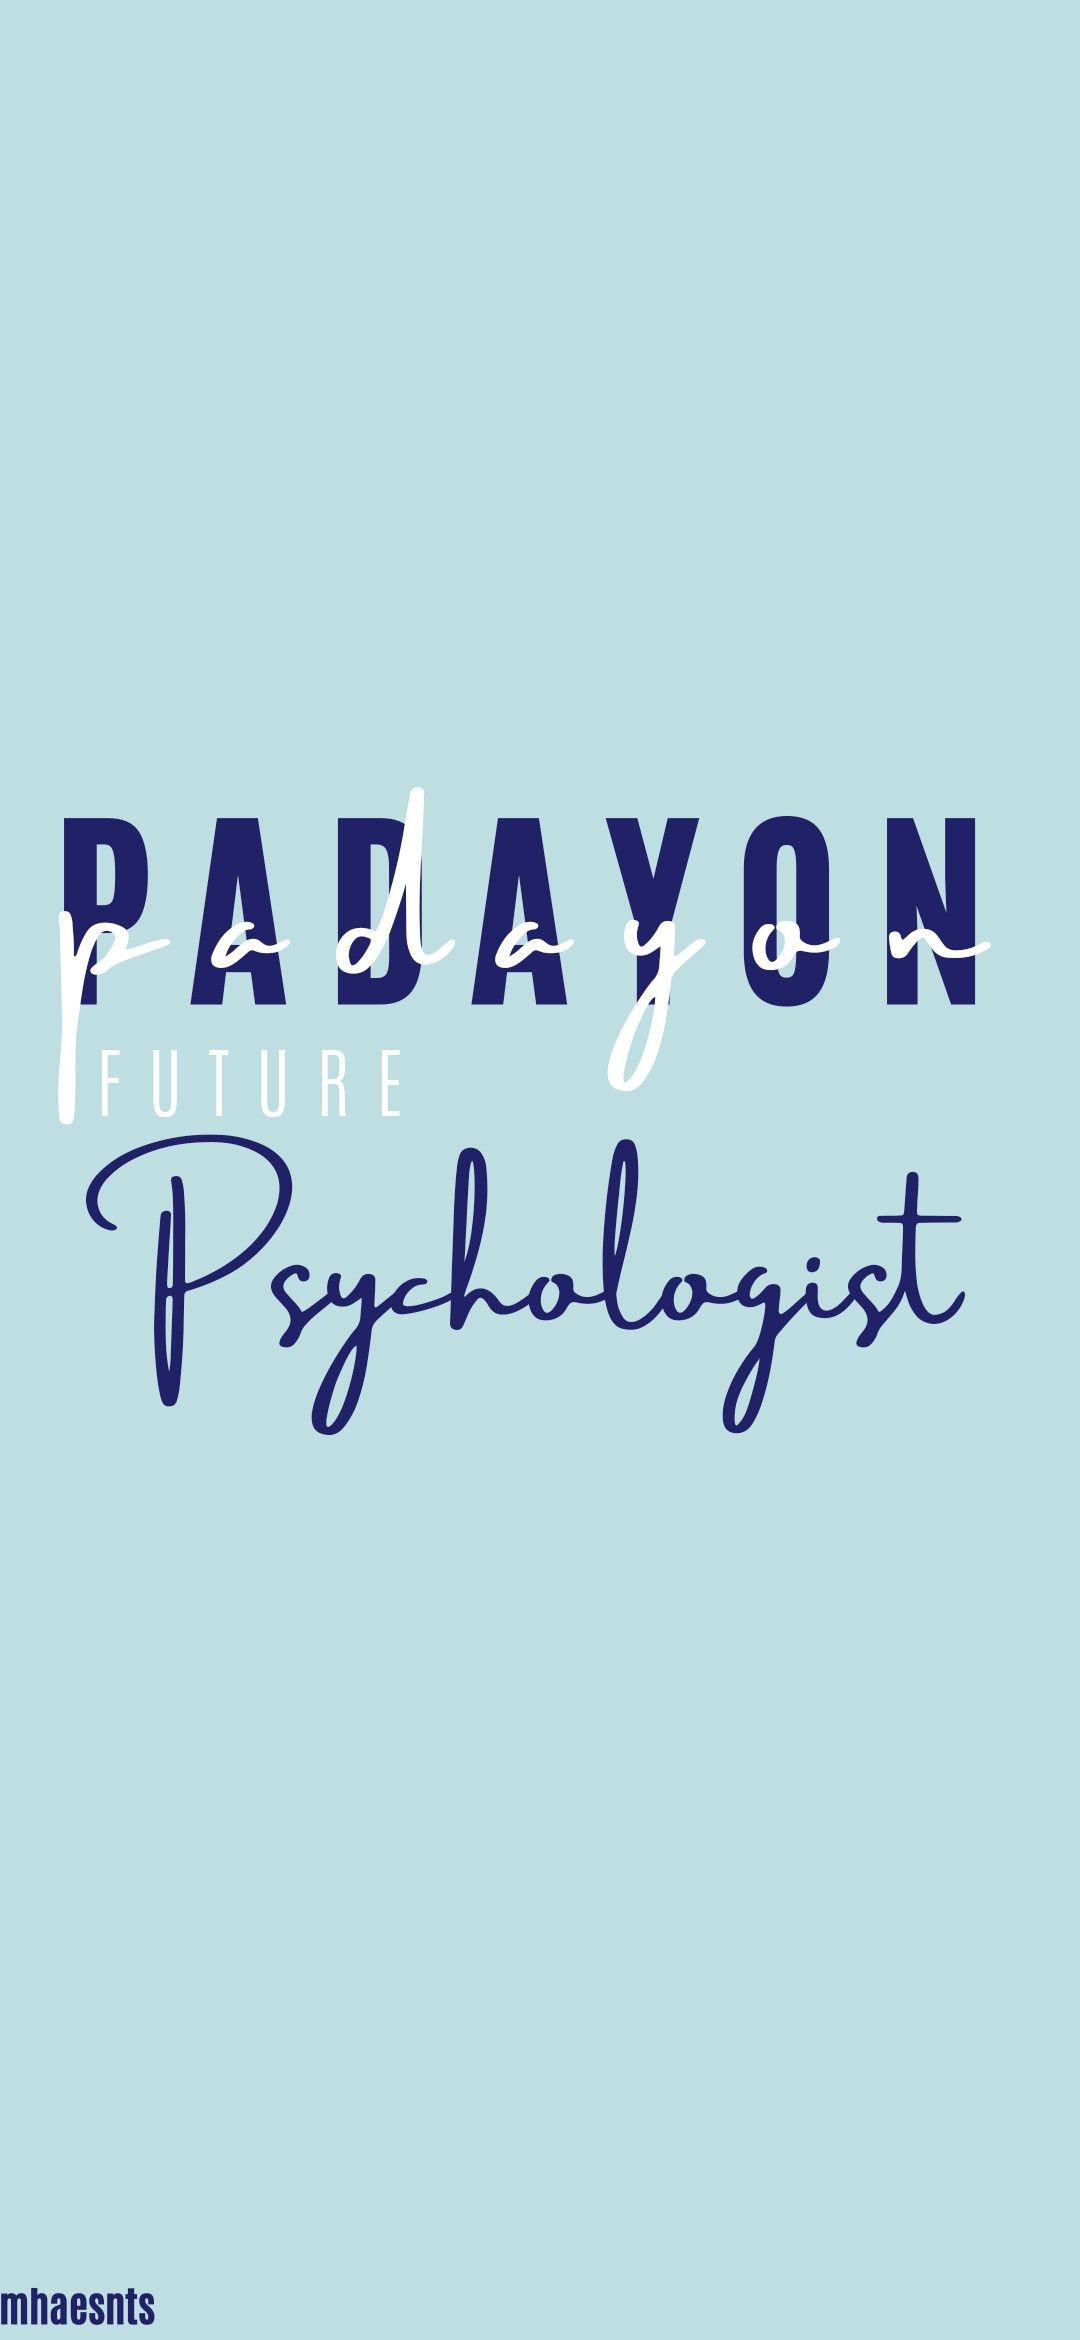 Padayon Future Psychologist Psychology Wallpaper